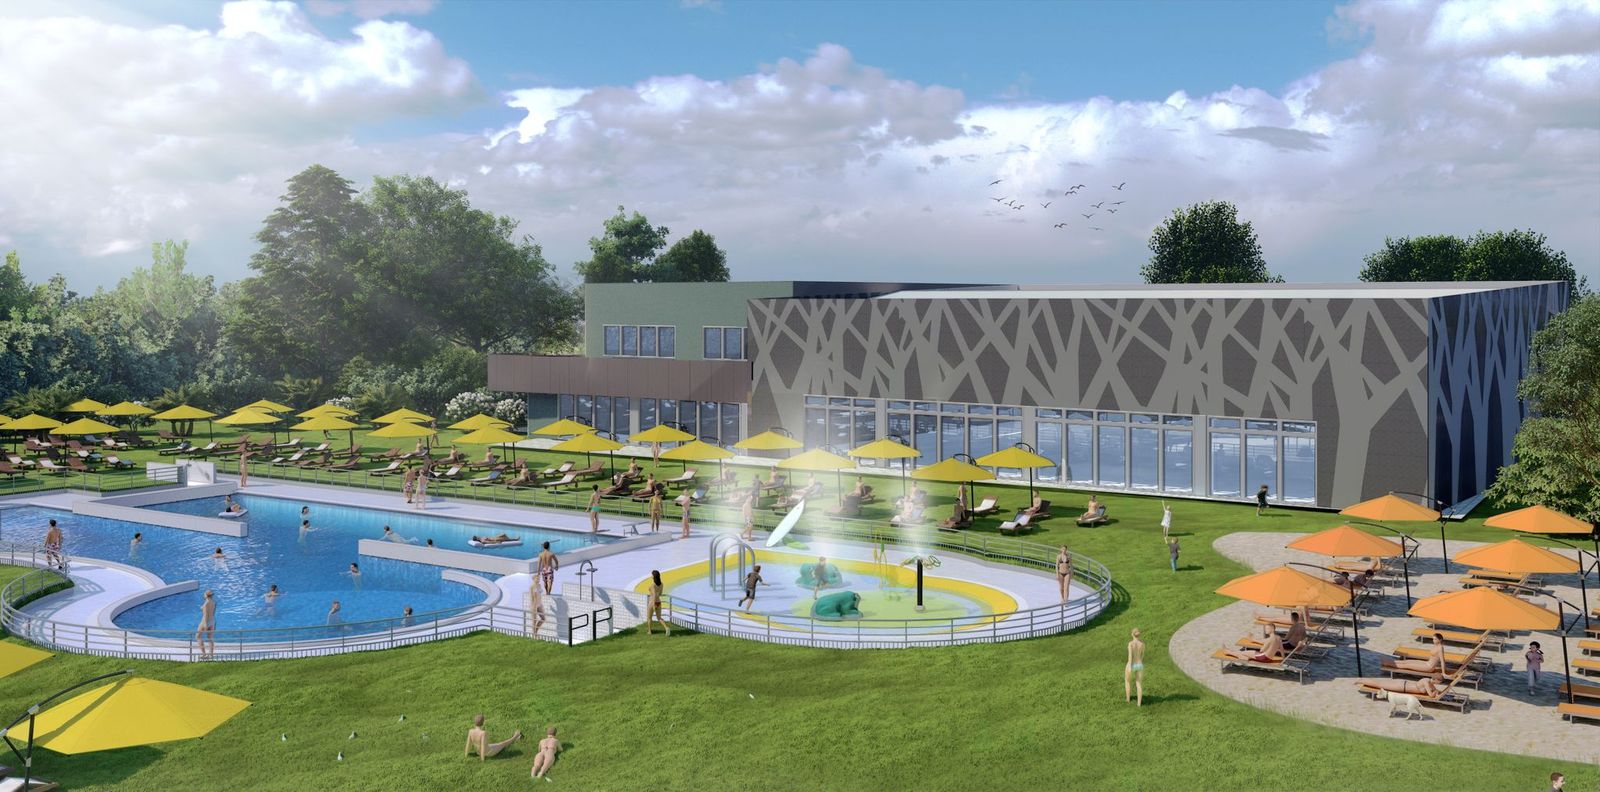 Rendering presentazione nuovo centro sportivo Vimercate piscina